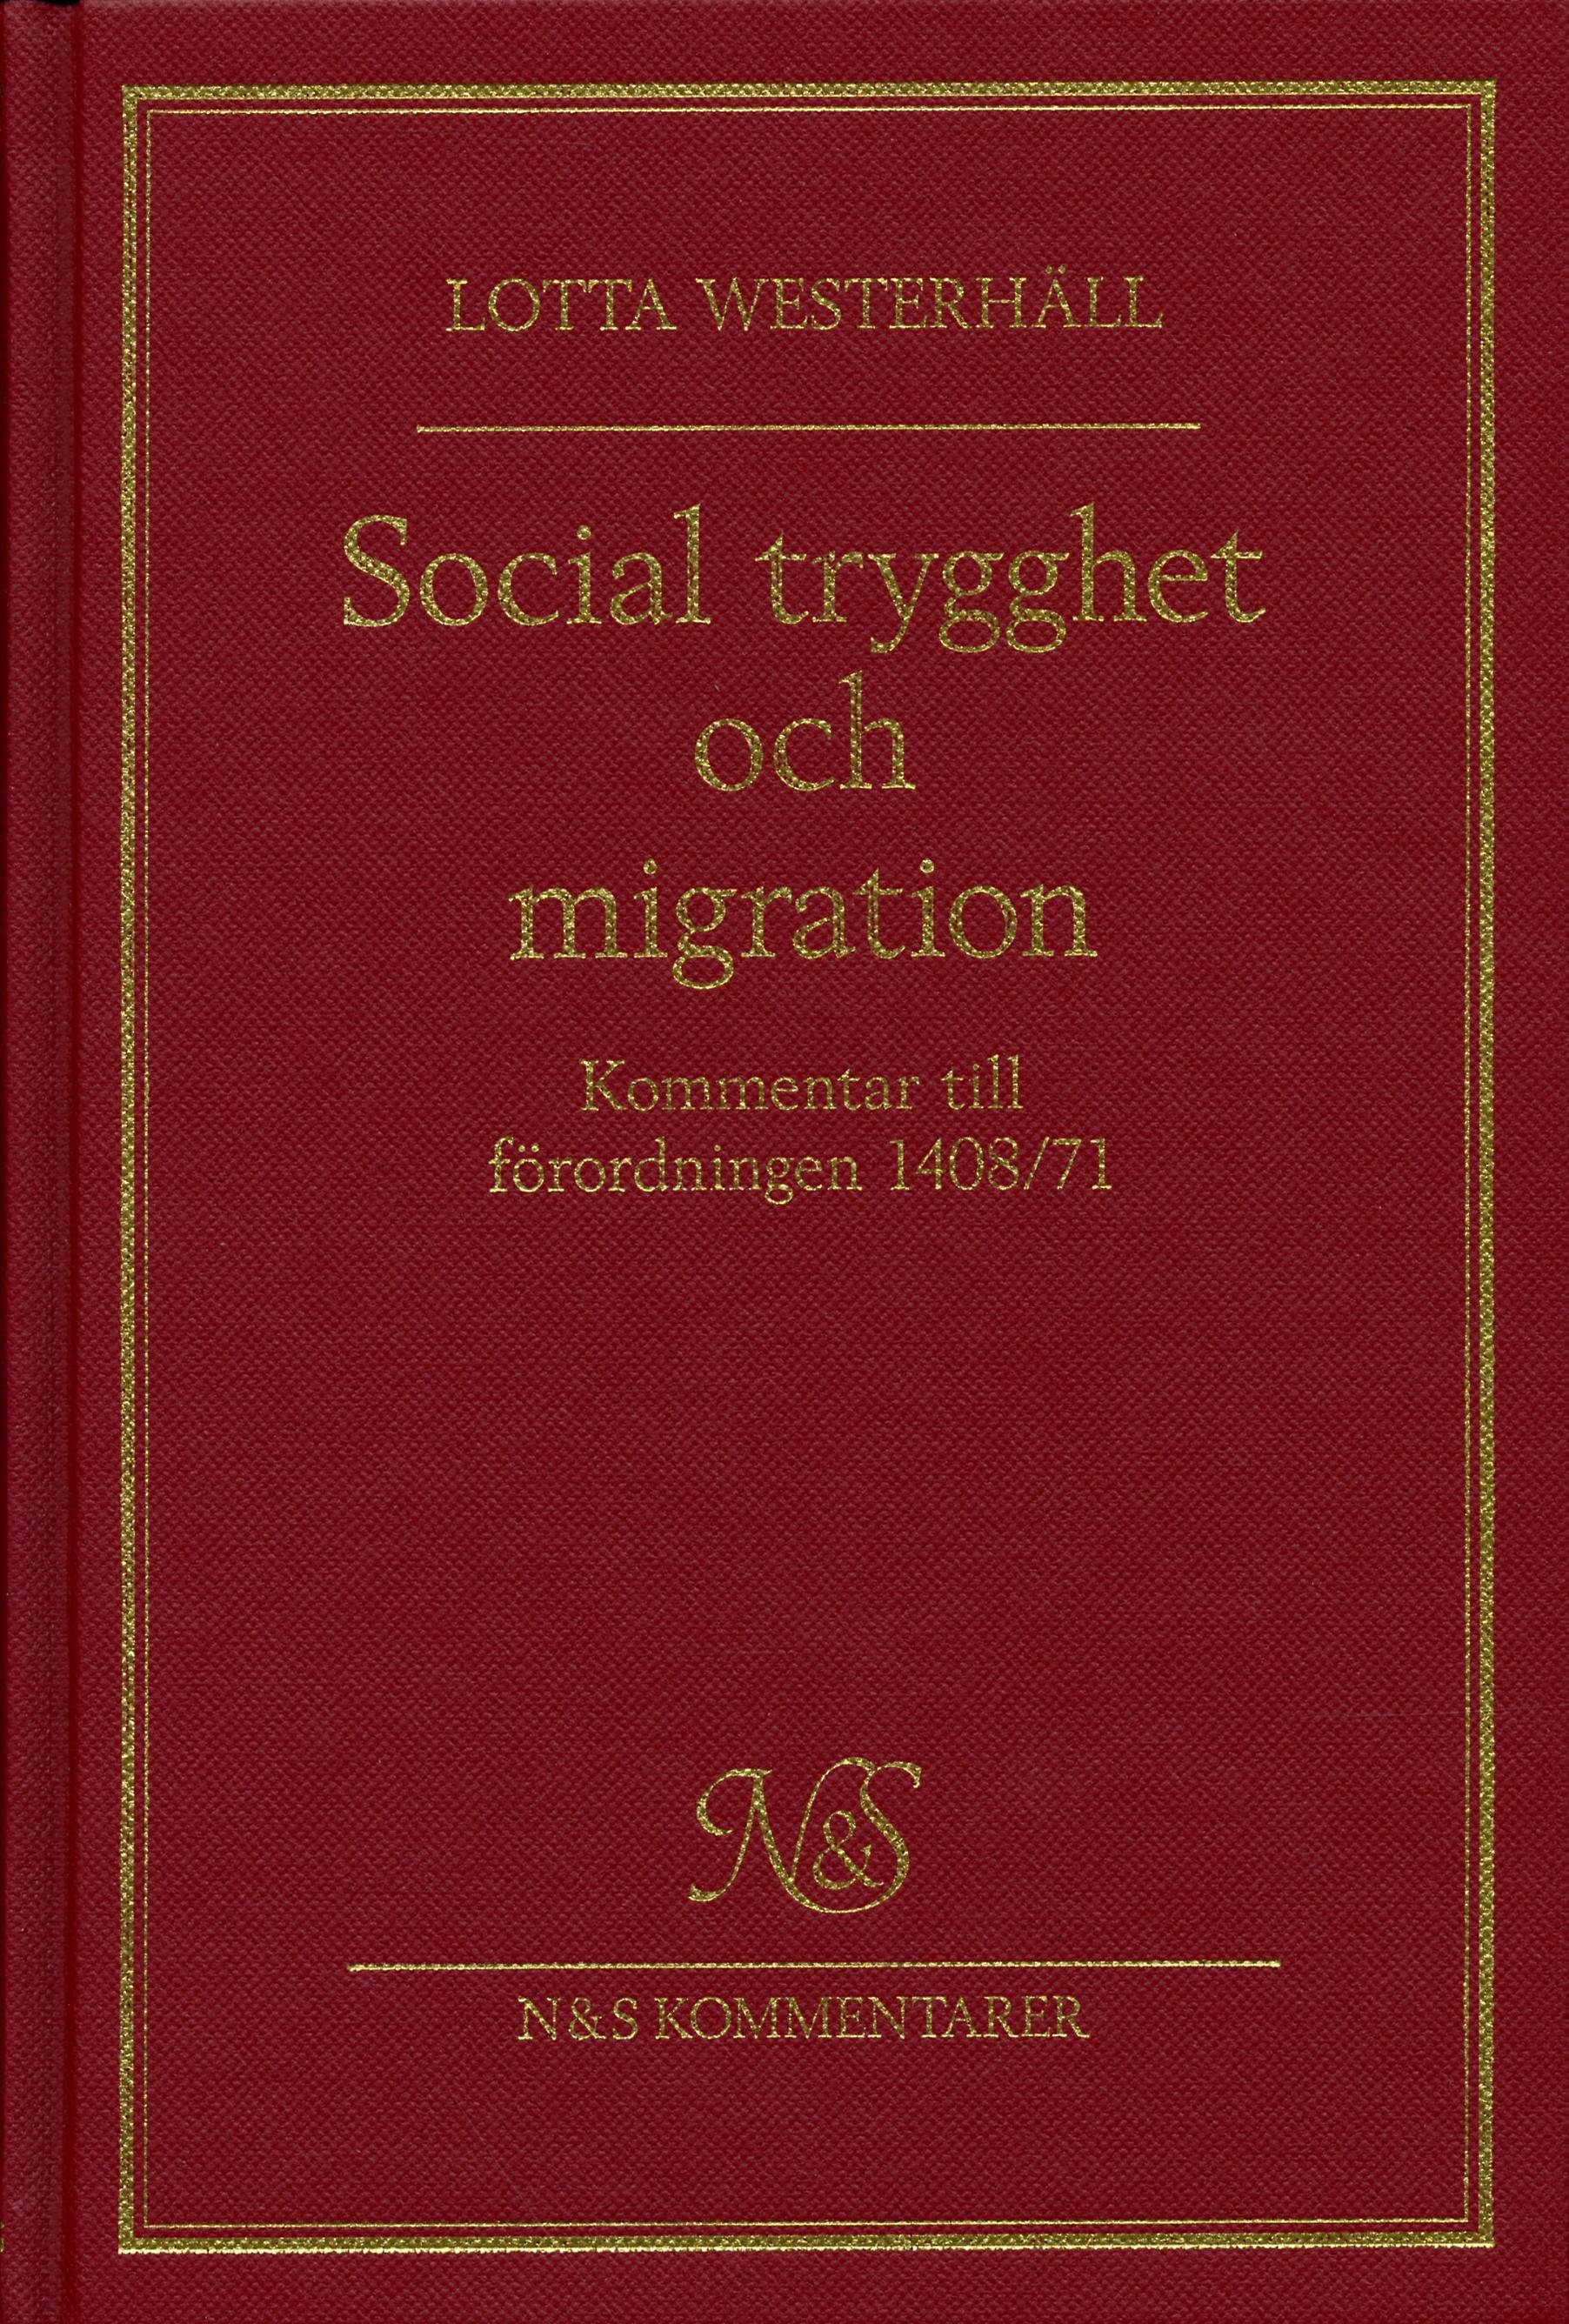 Social trygghet och migration - kommentar till förordningen 1408/71 om till